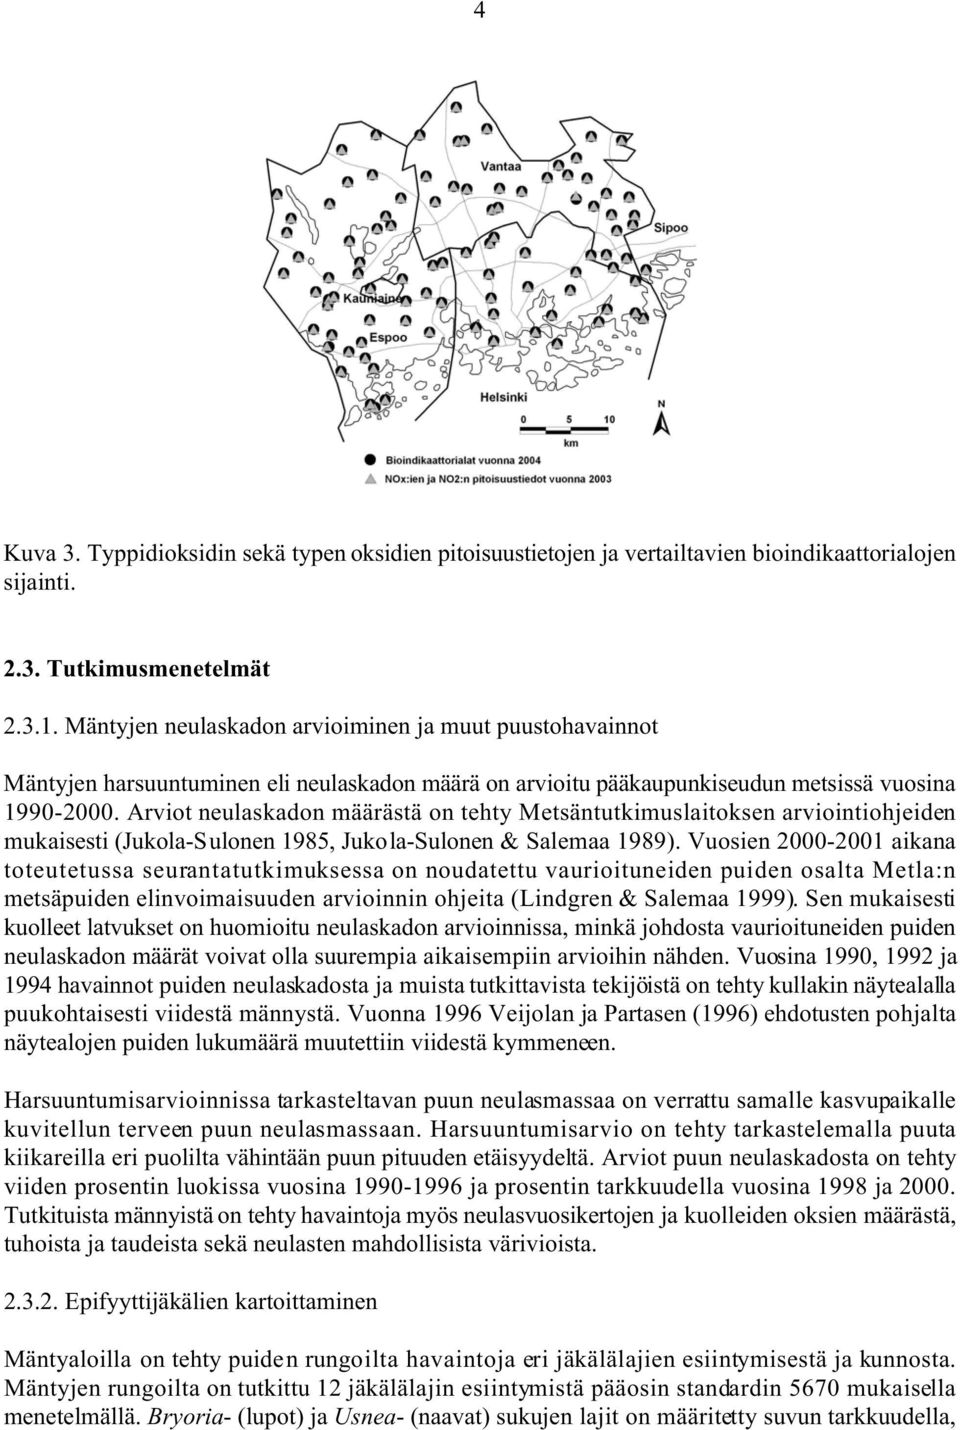 Arviot neulaskadon määrästä on tehty Metsäntutkimuslaitoksen arviointiohjeiden mukaisesti (Jukola-Sulonen 1985, Jukola-Sulonen & Salemaa 1989).